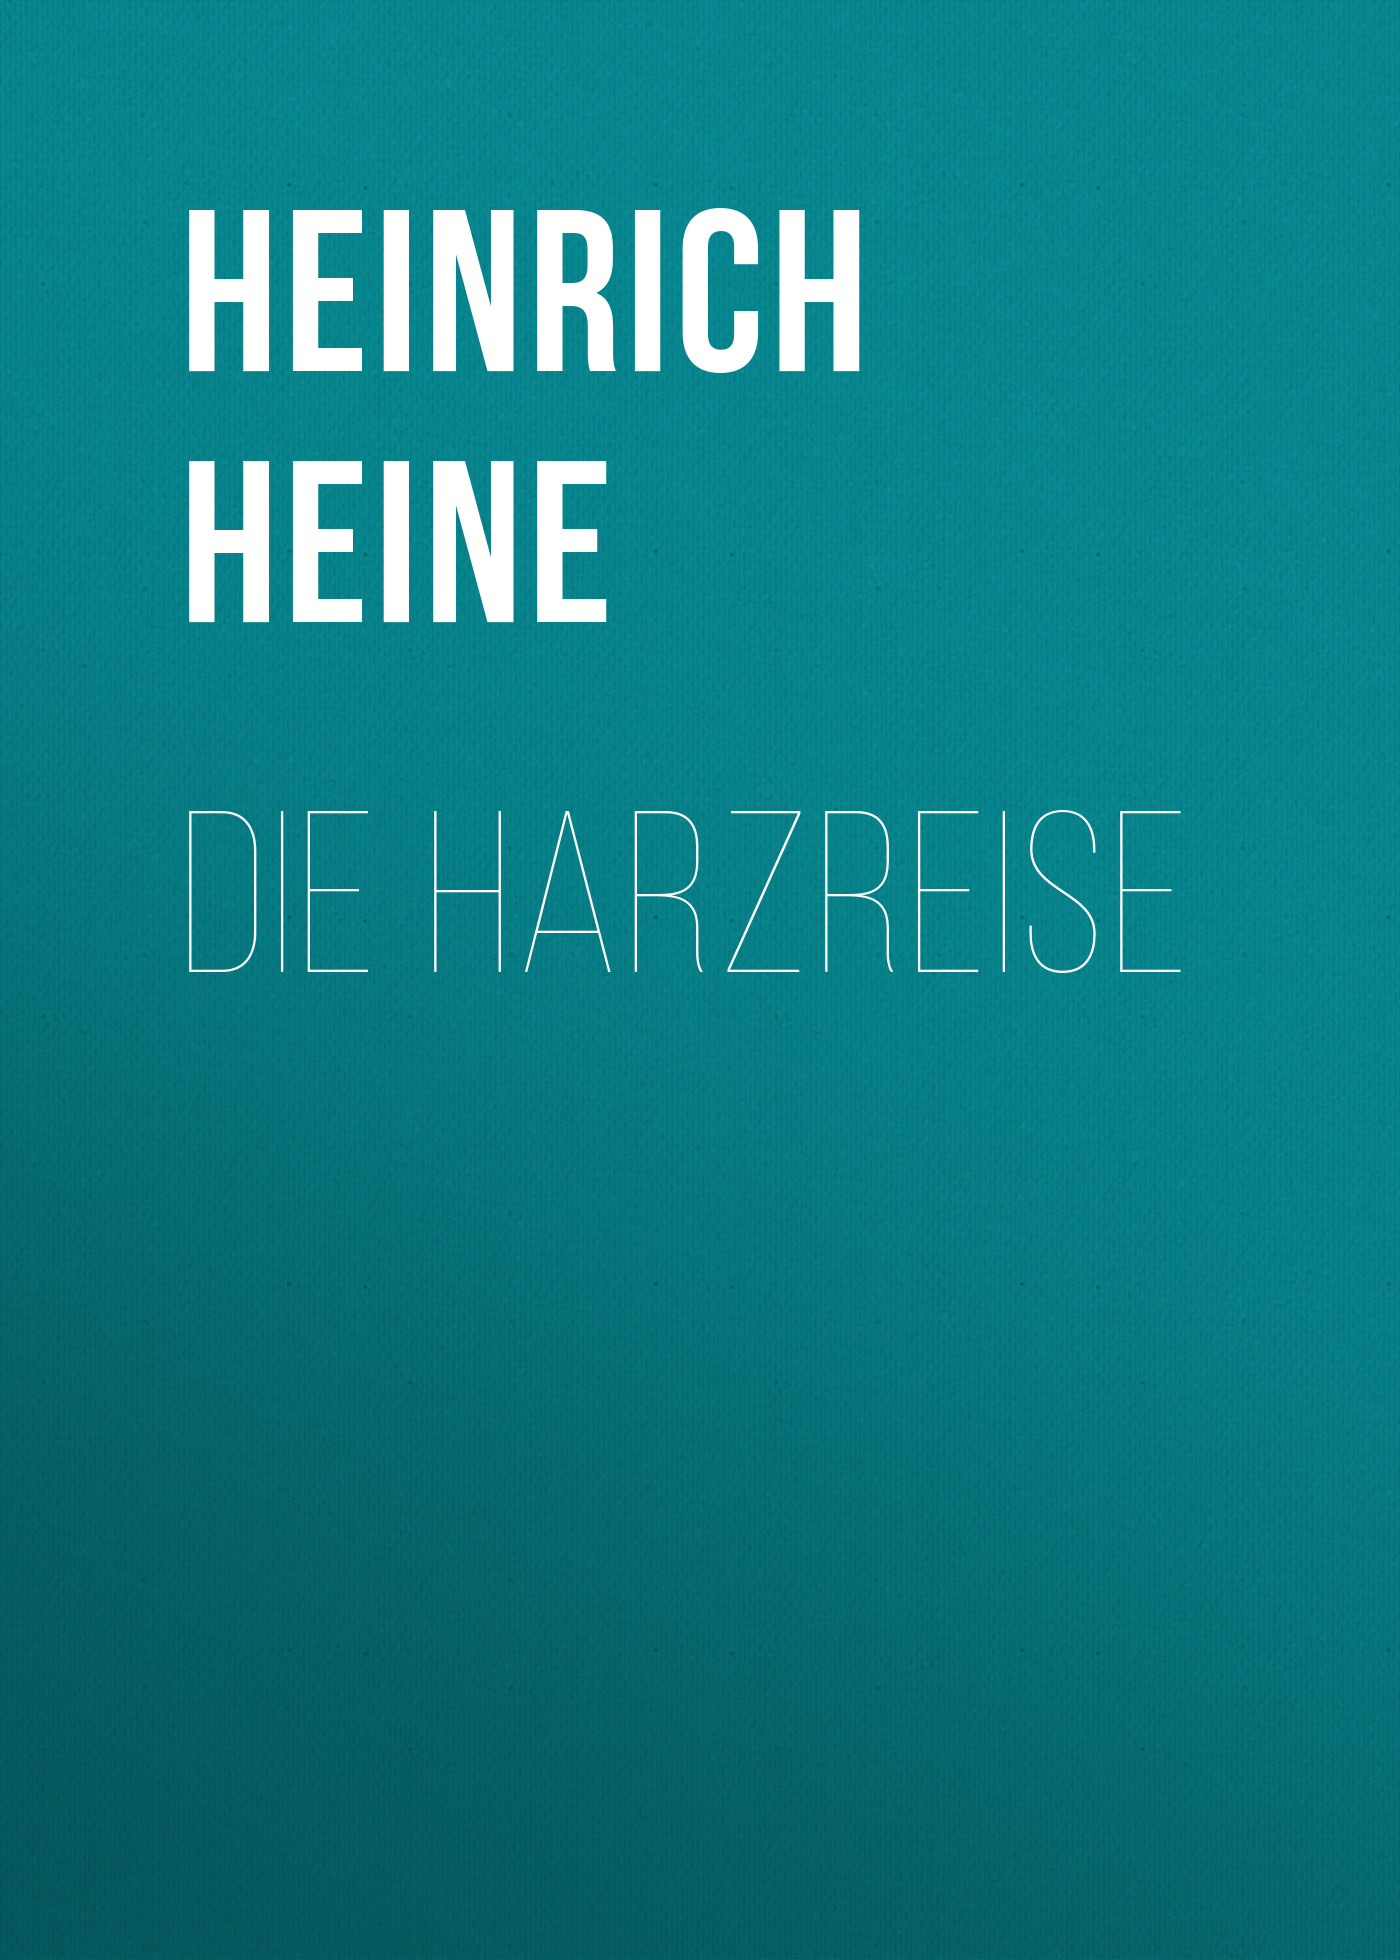 Книга Die Harzreise из серии , созданная Генрих Гейне, может относится к жанру Книги о Путешествиях, Литература 19 века, Зарубежная старинная литература, Зарубежная классика. Стоимость электронной книги Die Harzreise с идентификатором 36095525 составляет 0 руб.